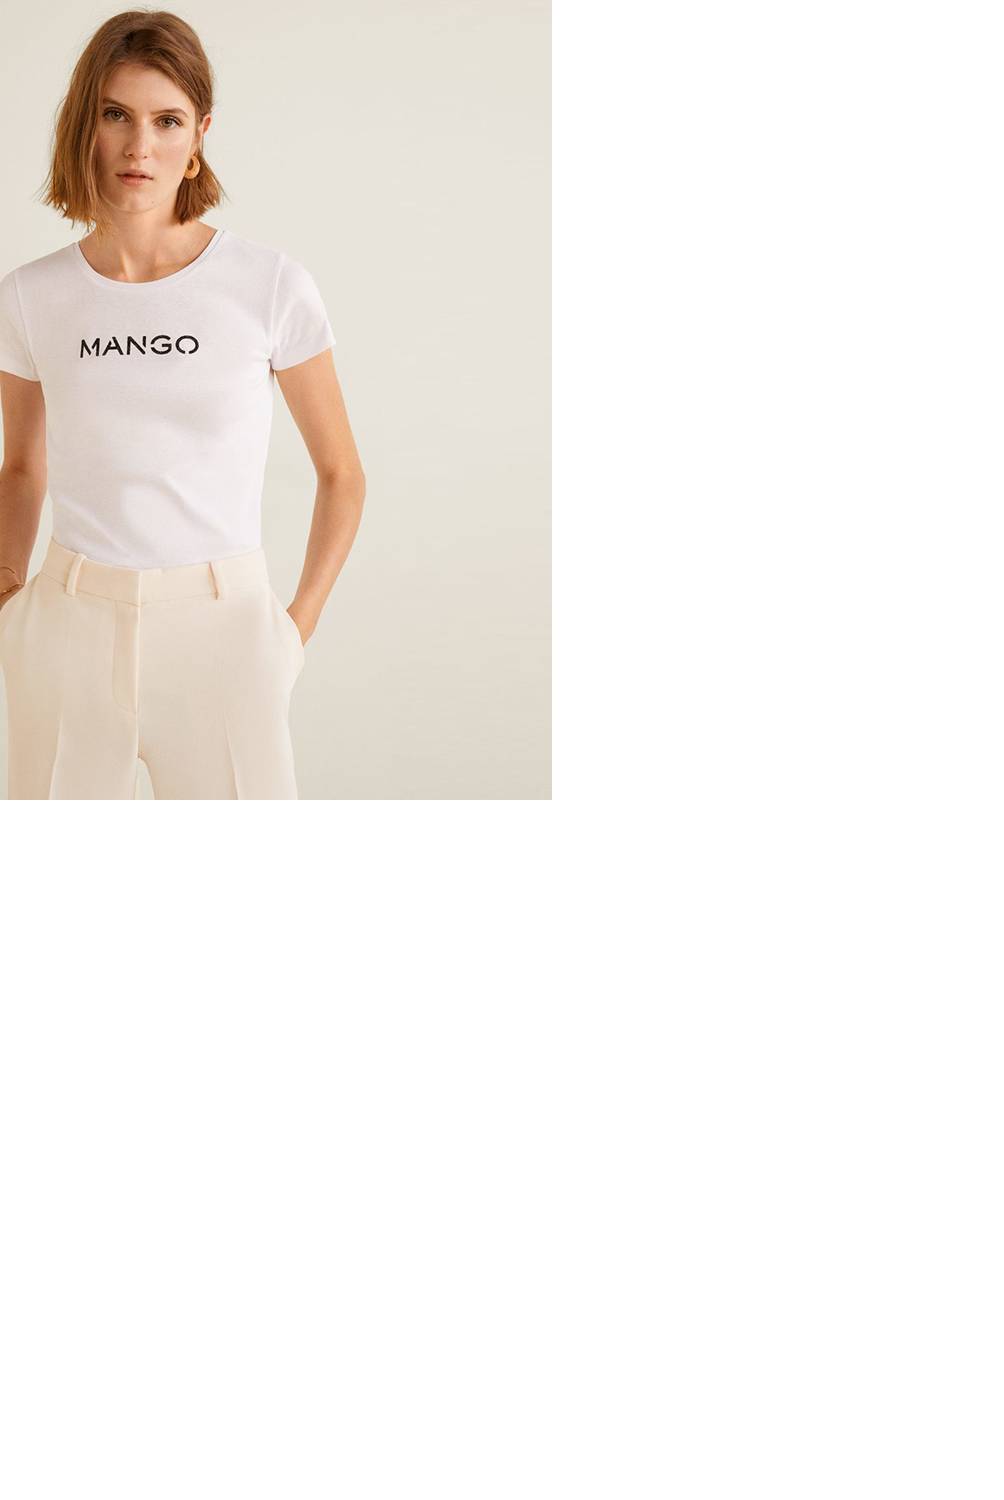 MANGO - Camiseta